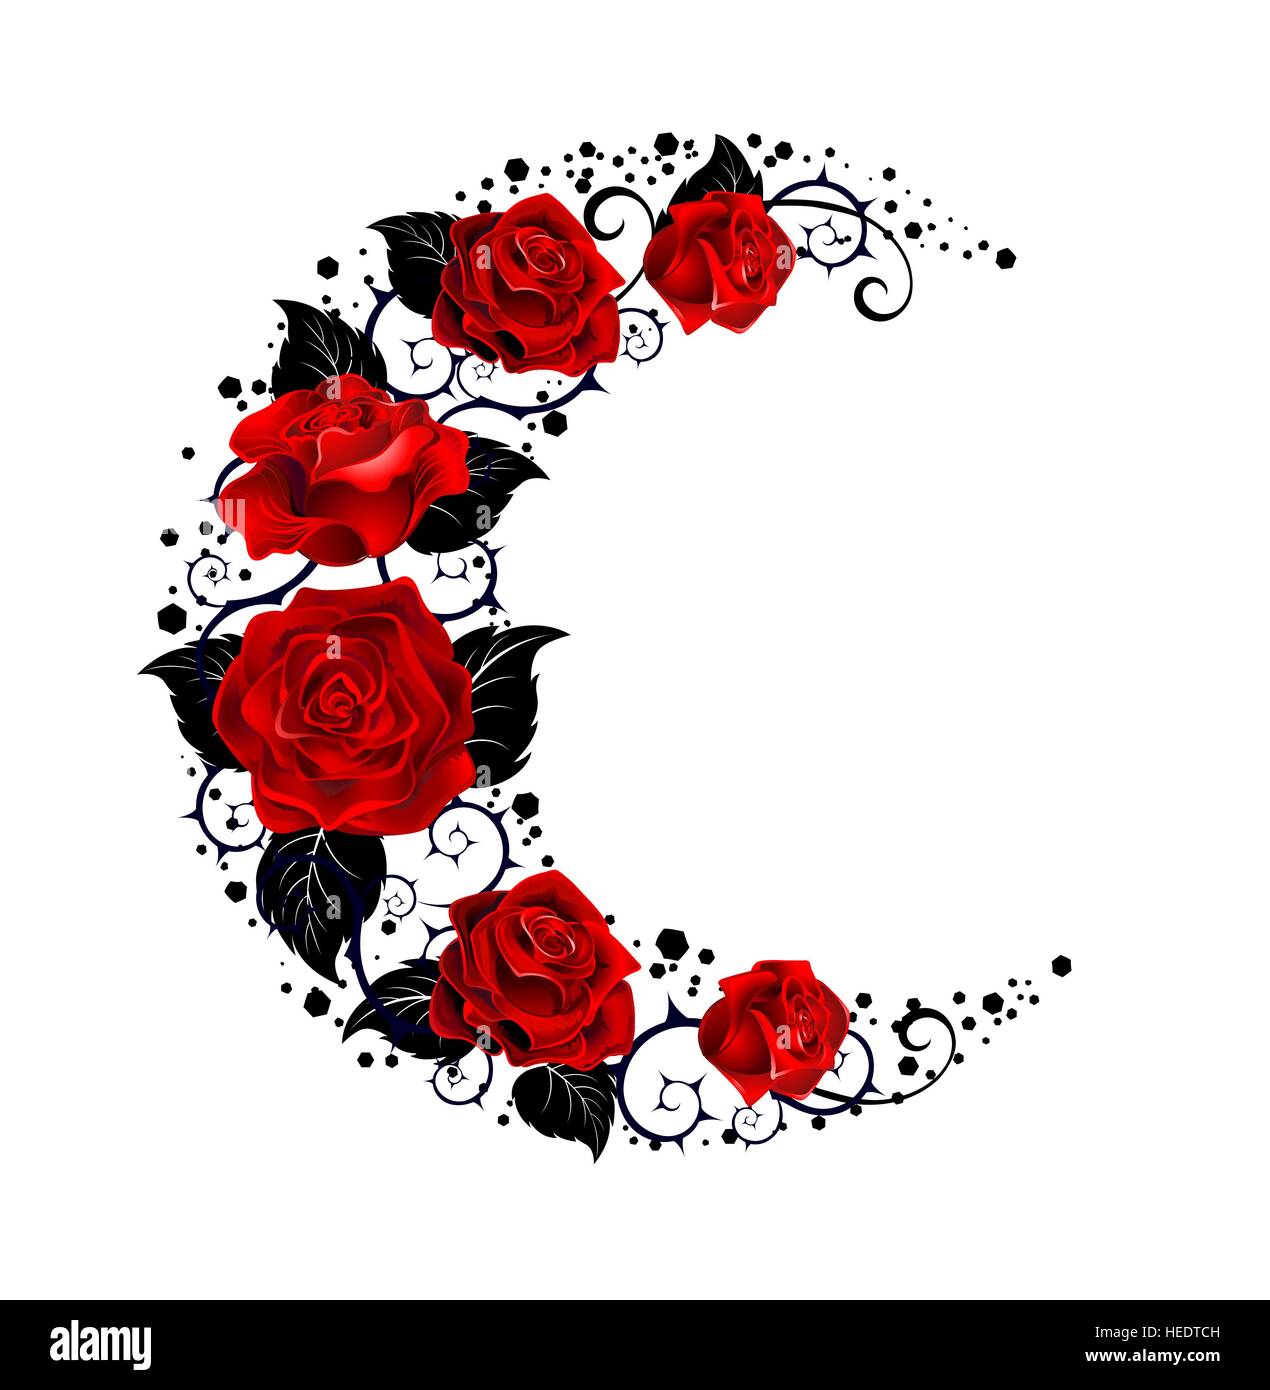 Mystische Mond bemalt, schwarze Stängel und rote Rosen auf weißem Hintergrund.  Tattoo-Stil. Stock Vektor